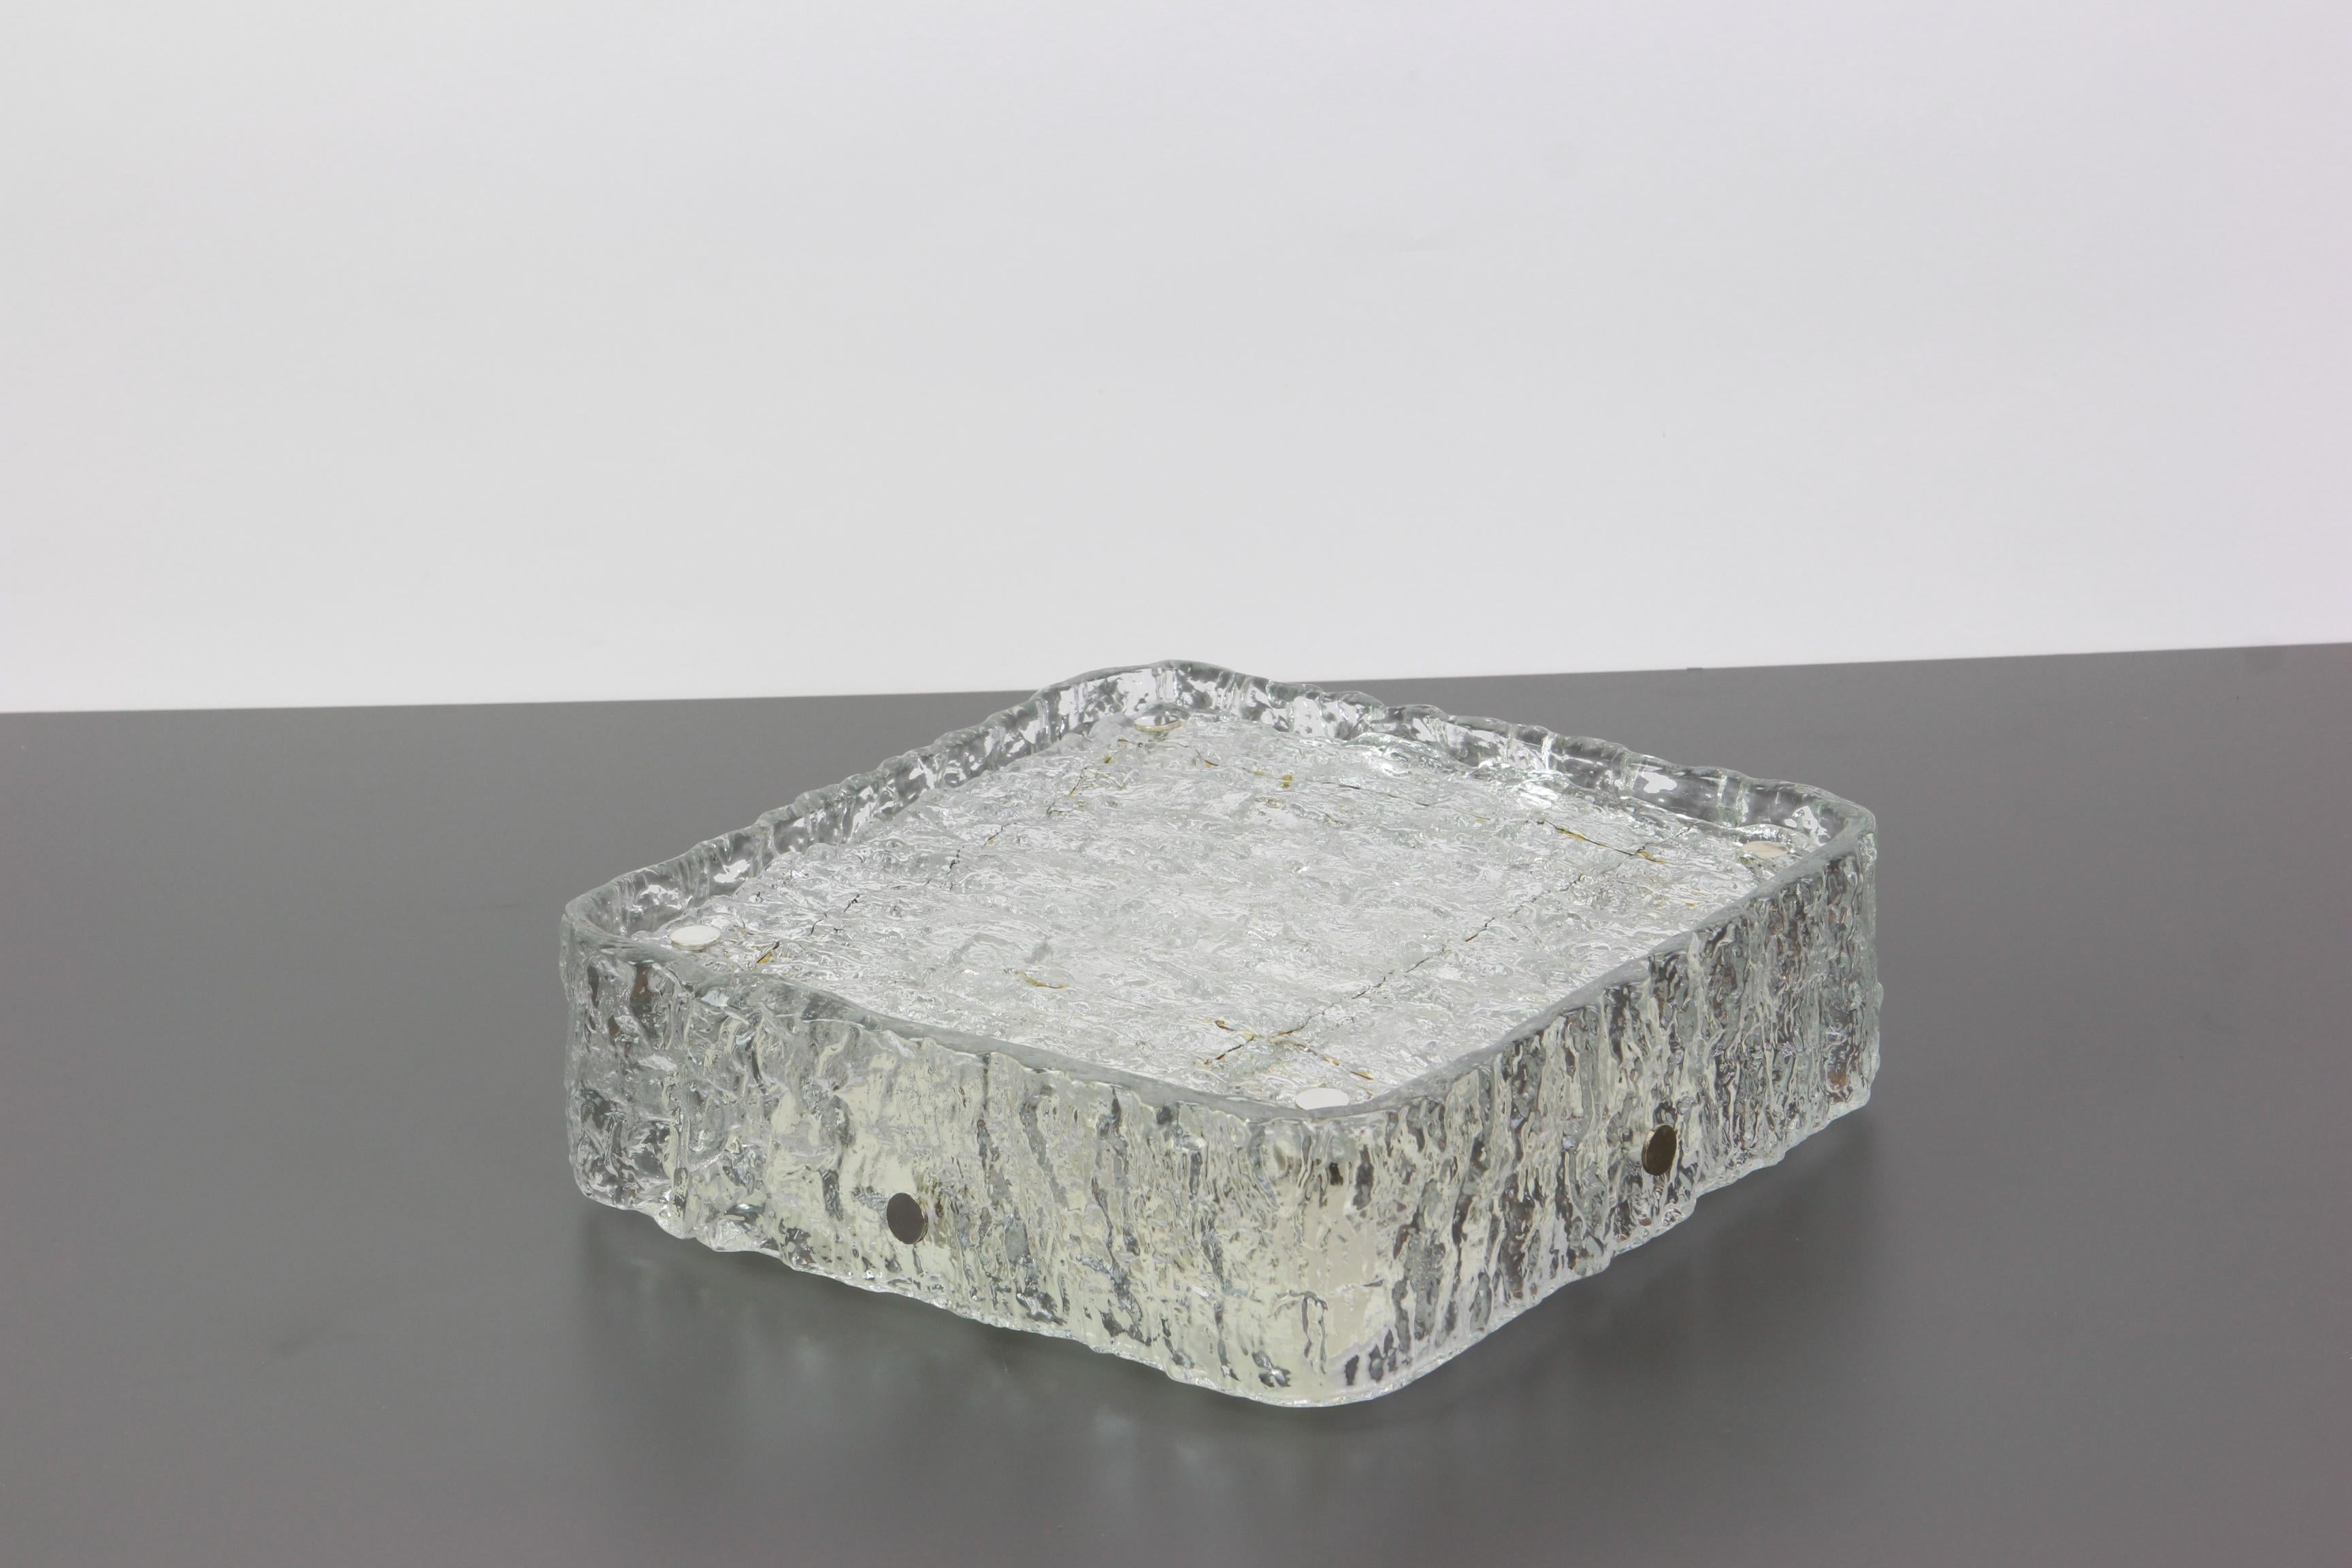 Ein wundervoller kleiner quadratischer Murano-Eisglas-Wandhalter, hergestellt von Kaiser Leuchten in Deutschland, 1970er Jahre.
Leuchte aus stark strukturiertem Eisglas auf weißem Metallsockel mit acht verchromten Halterungen.

Schwere Qualität